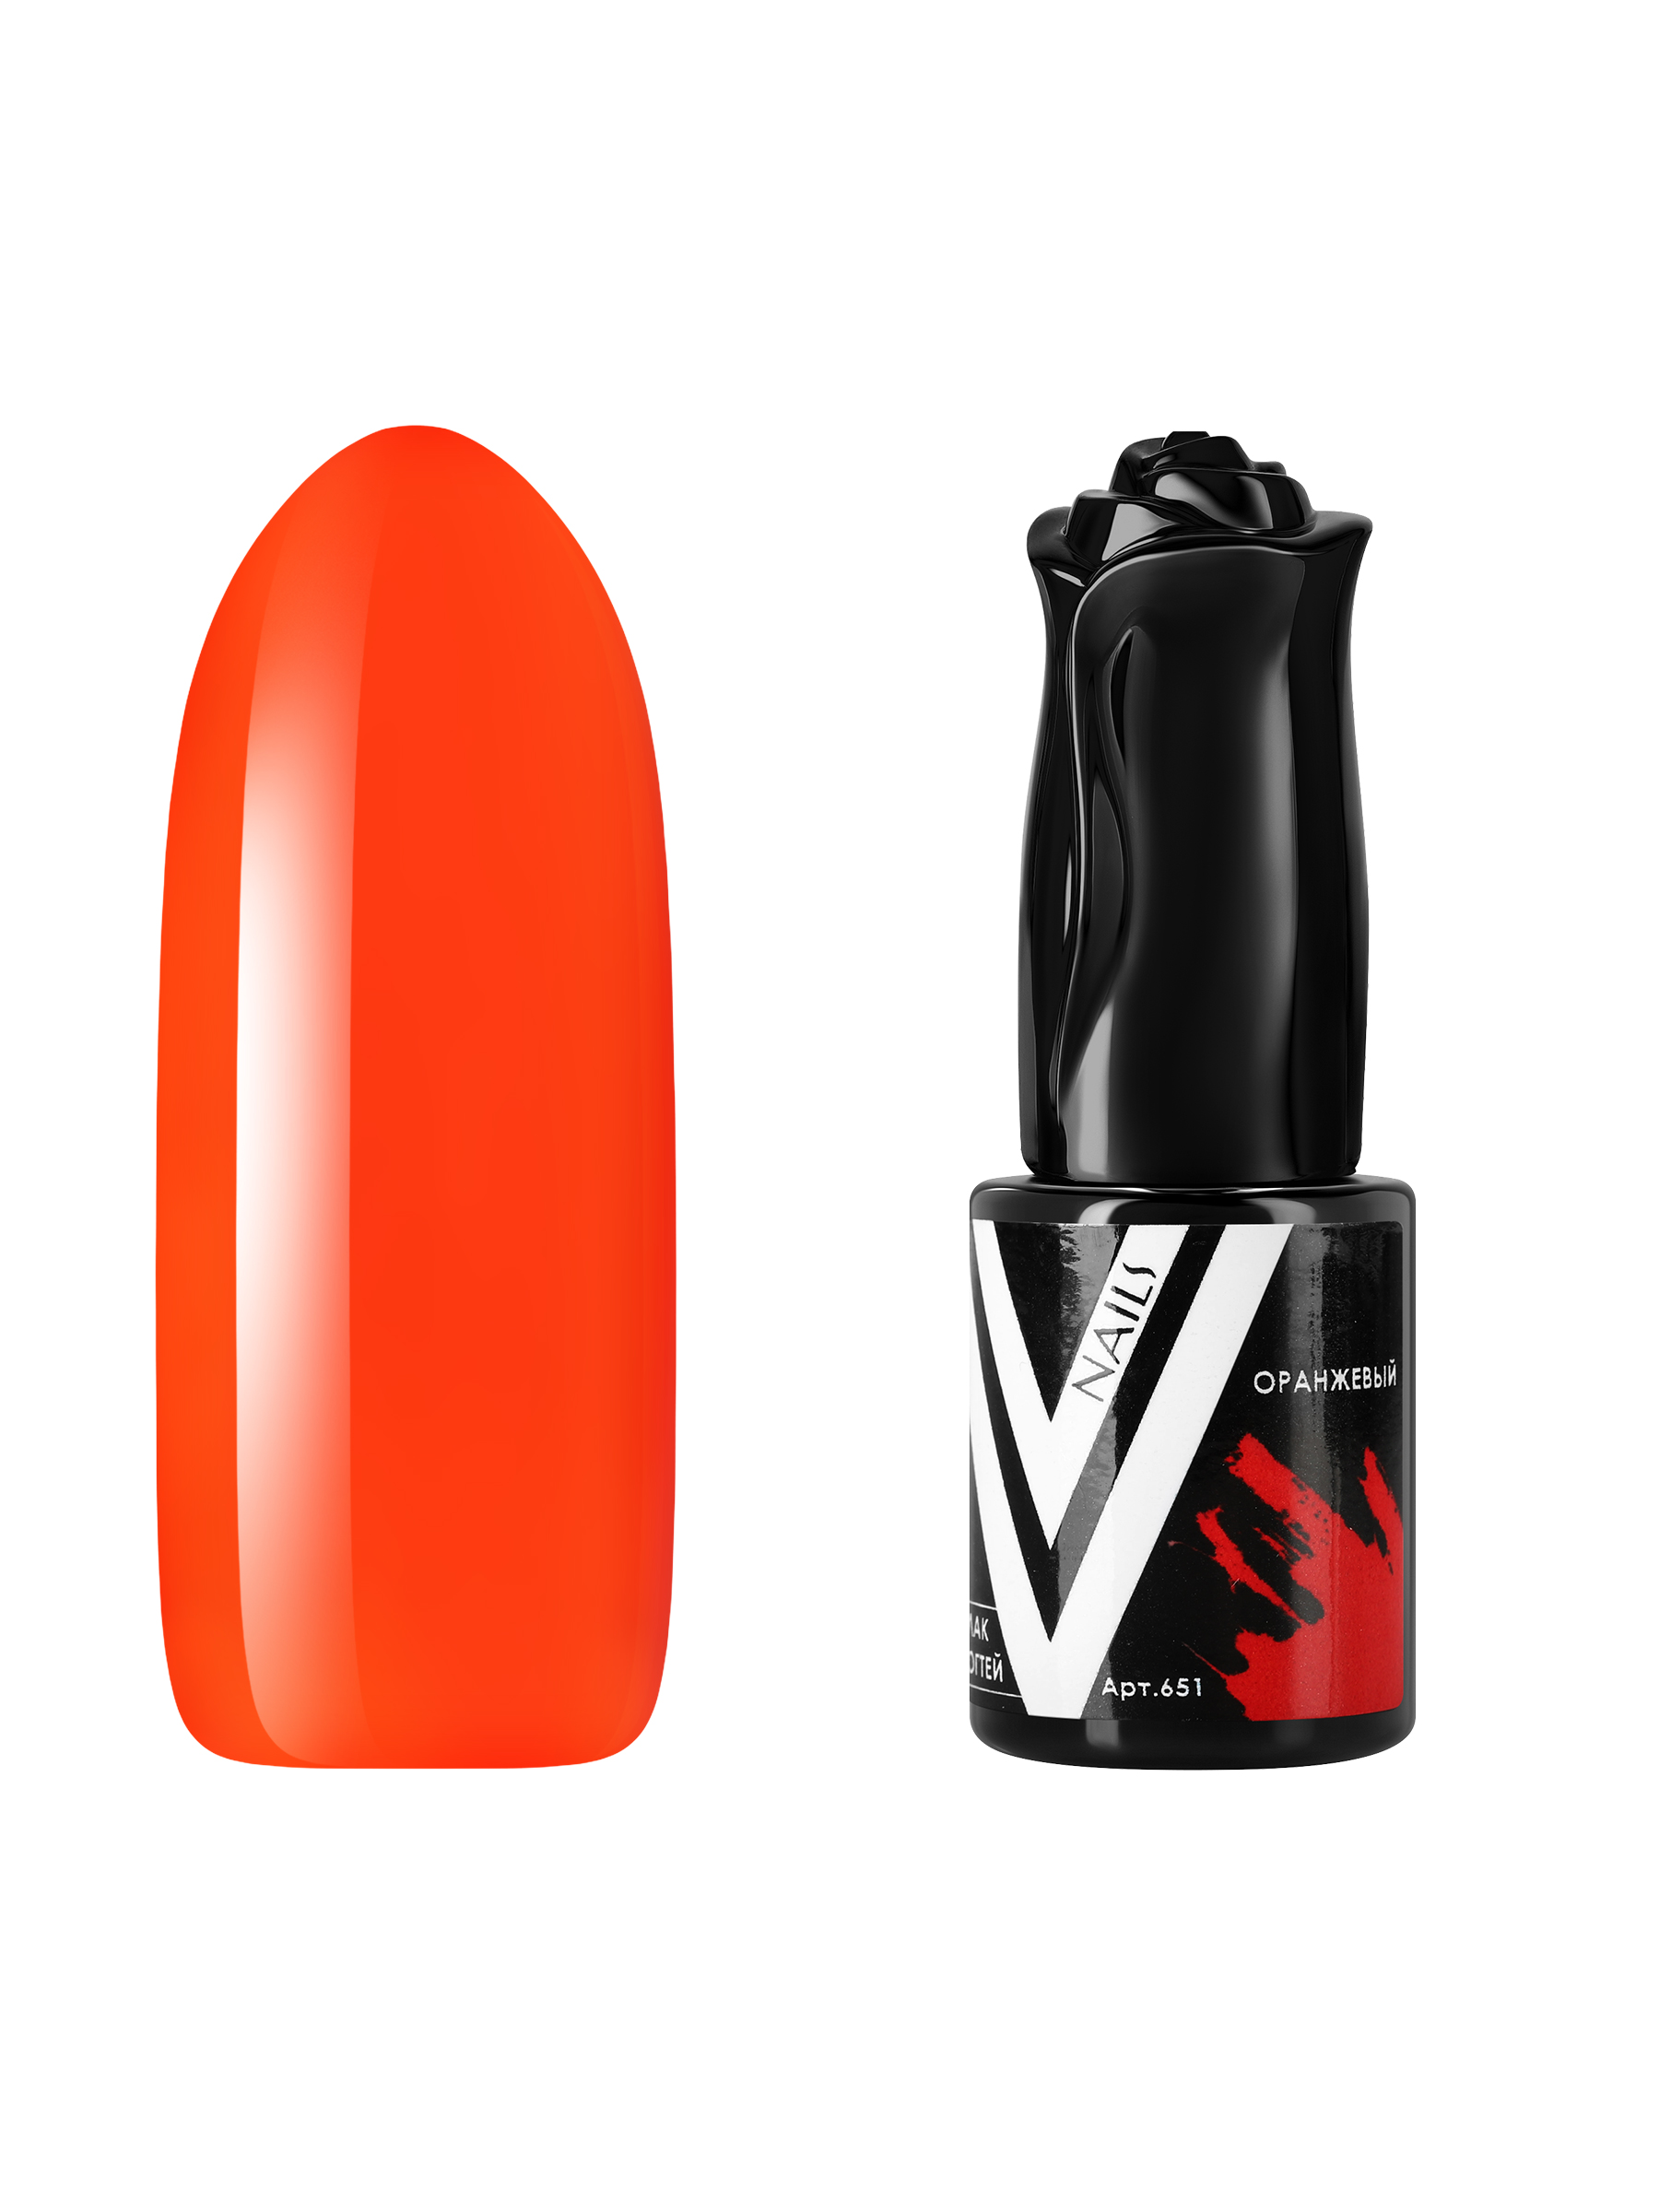 Гель-лак витражный Vogue Nails для аквариумного дизайна, прозрачный, оранжевый, 10 мл ошейник дарэлл простой стандарт 1 слой безразмерный кожаный 20 ммх44 см оранжевый